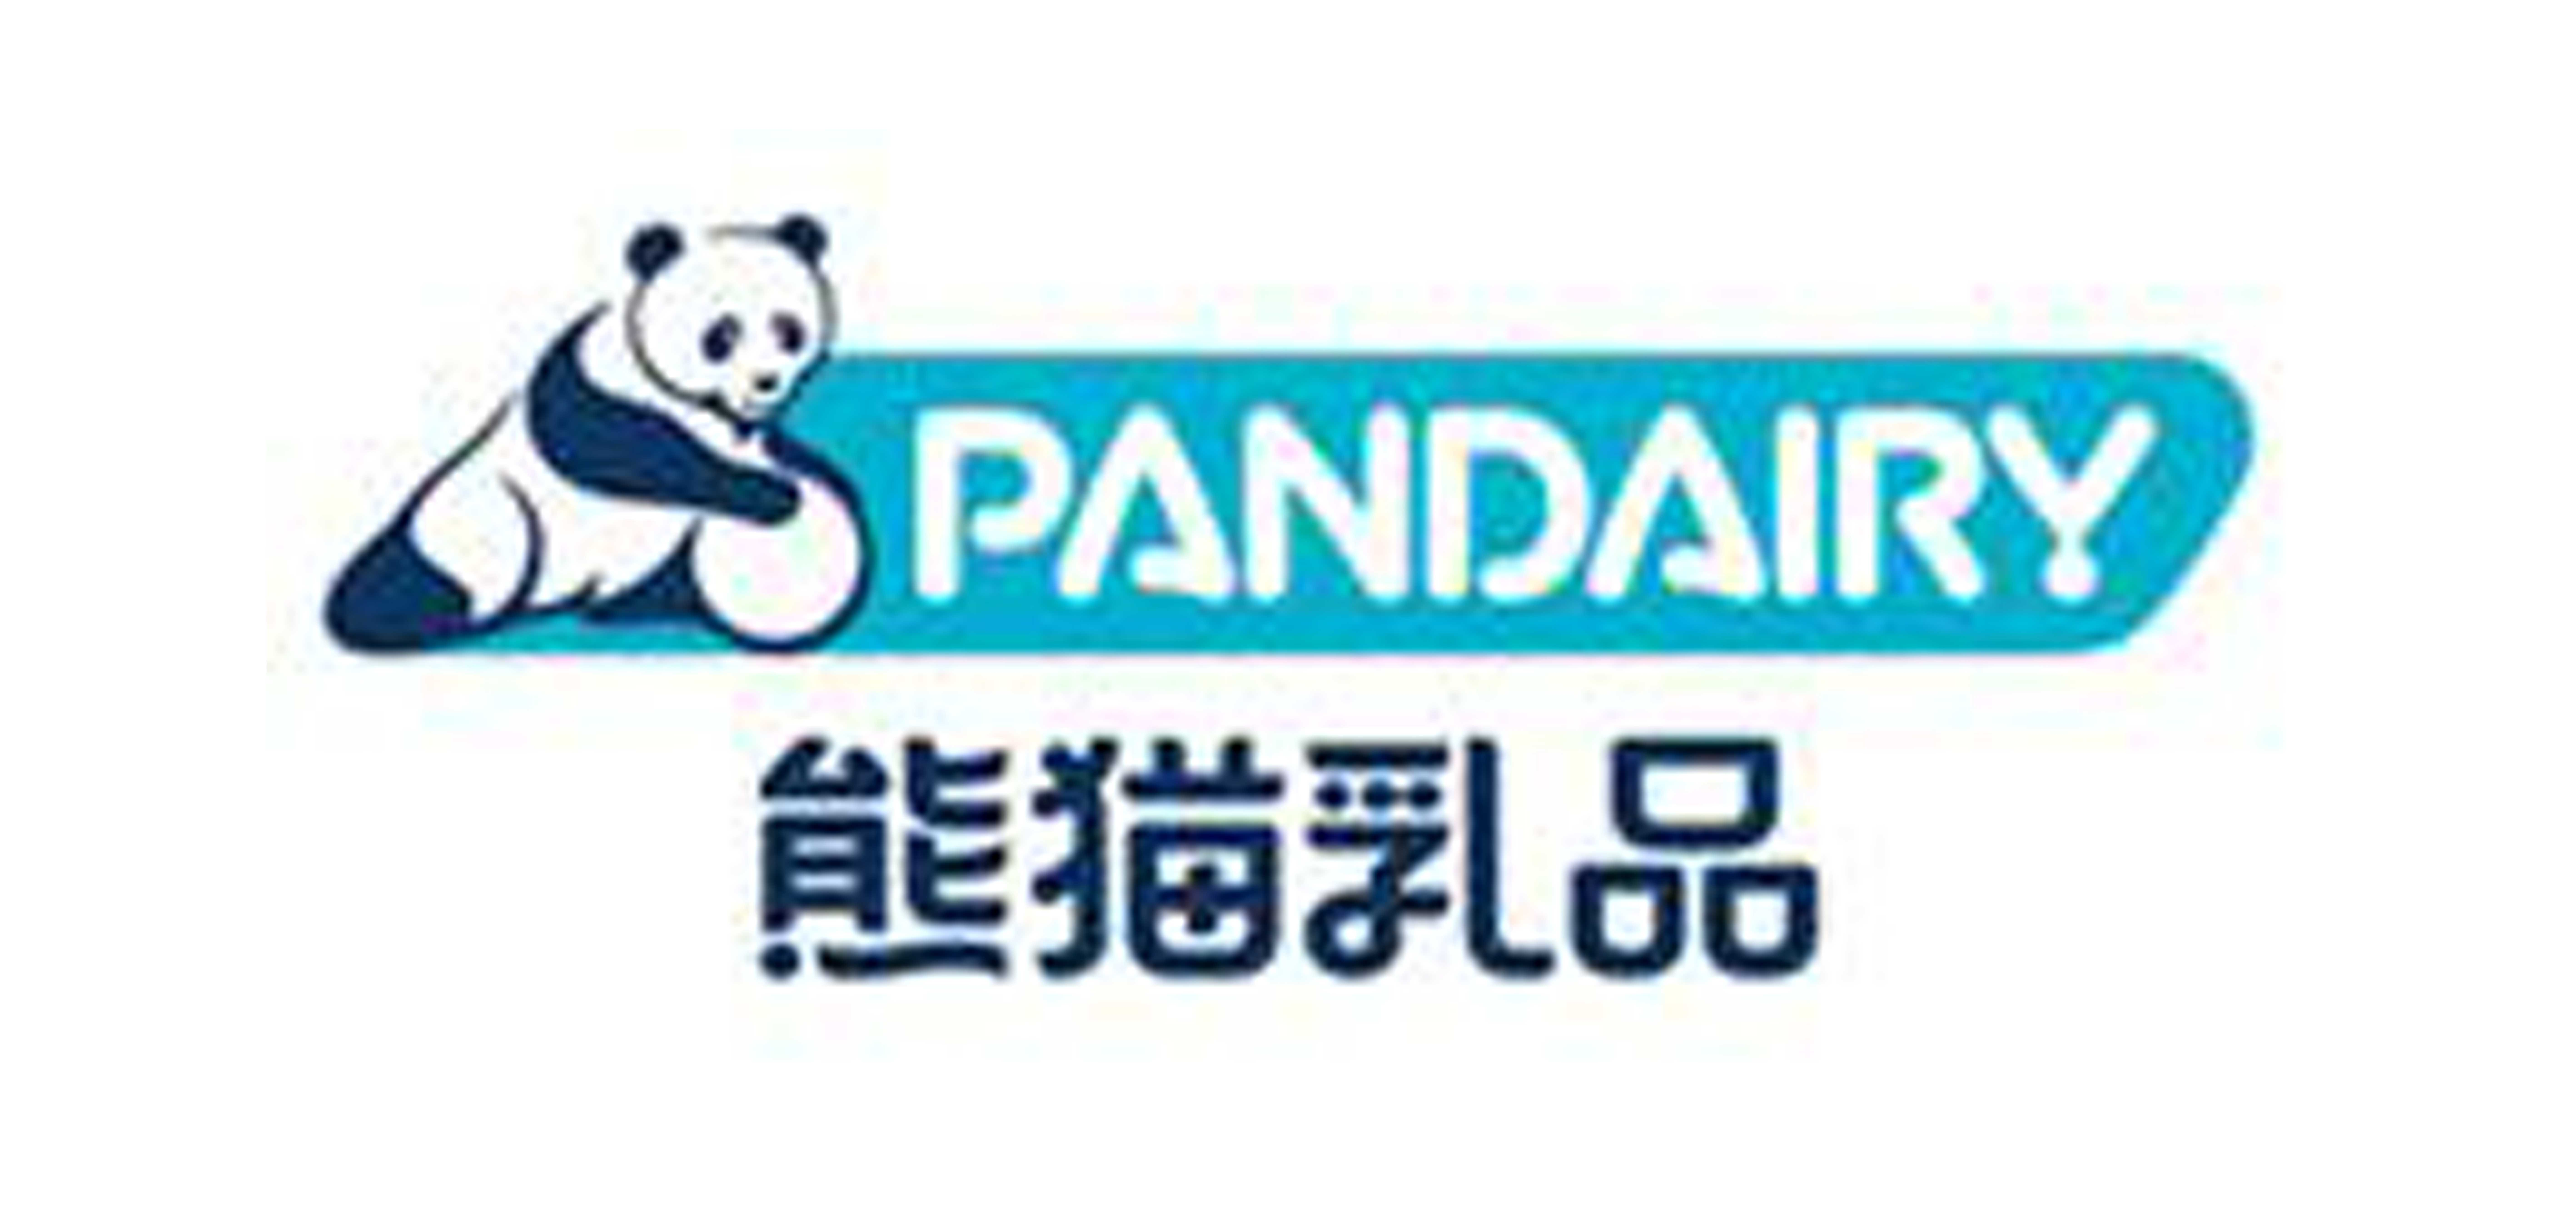 熊猫是什么牌子_熊猫品牌怎么样?